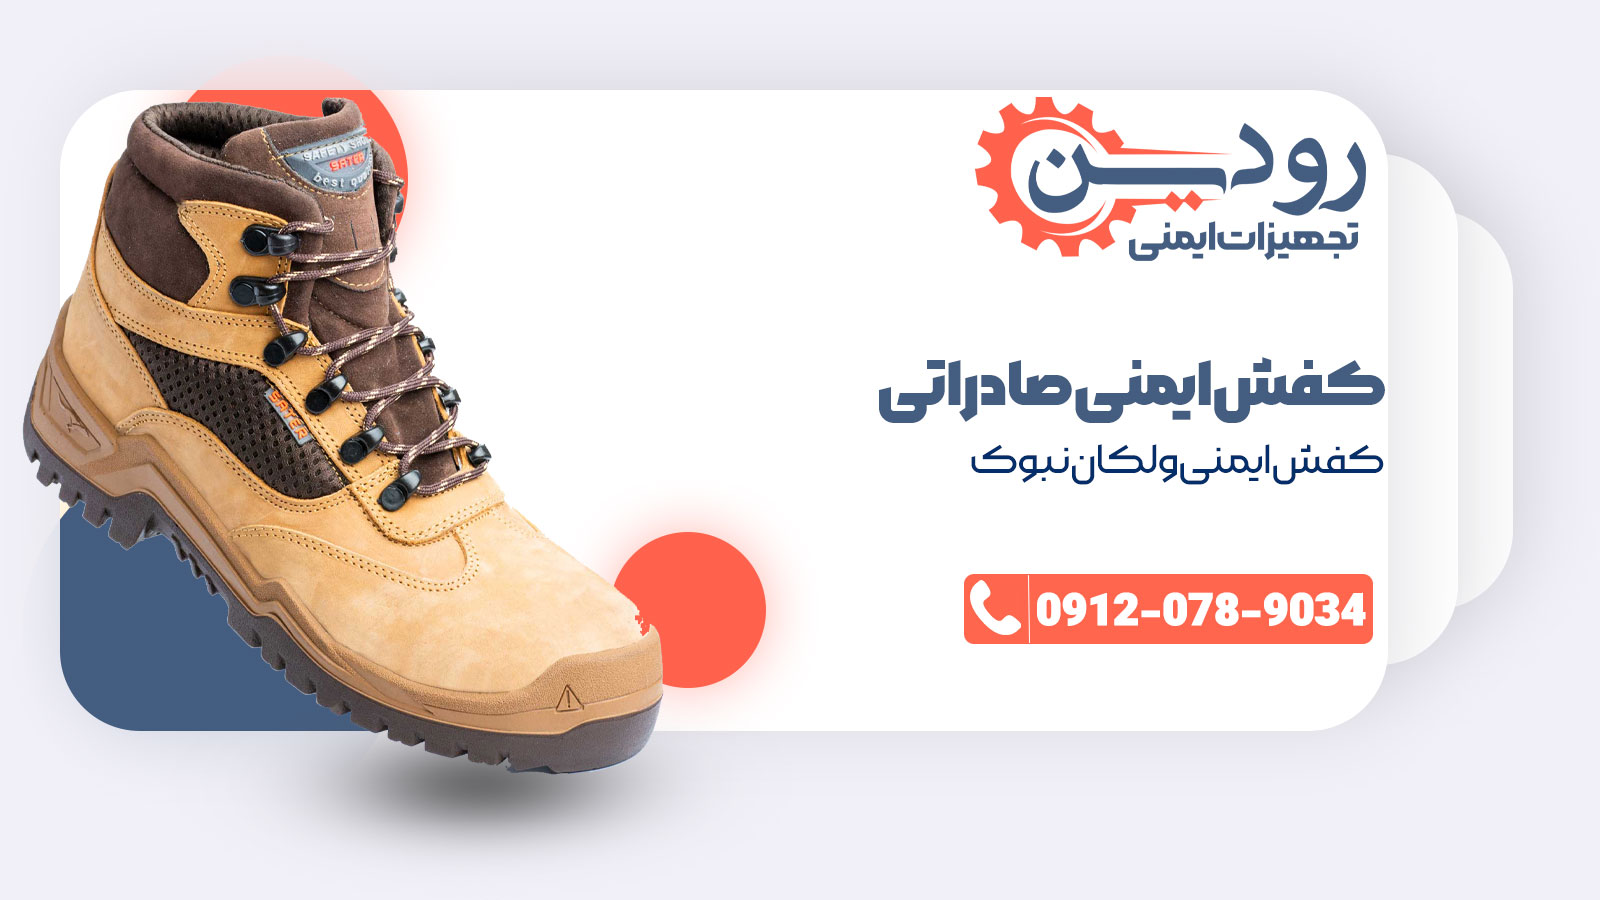 شرکت پخش و فروش کفش ایمنی صادراتی در ایران برنامه دارد تا در به کل جهان صادرات کفش ایمنی را انجام دهد.